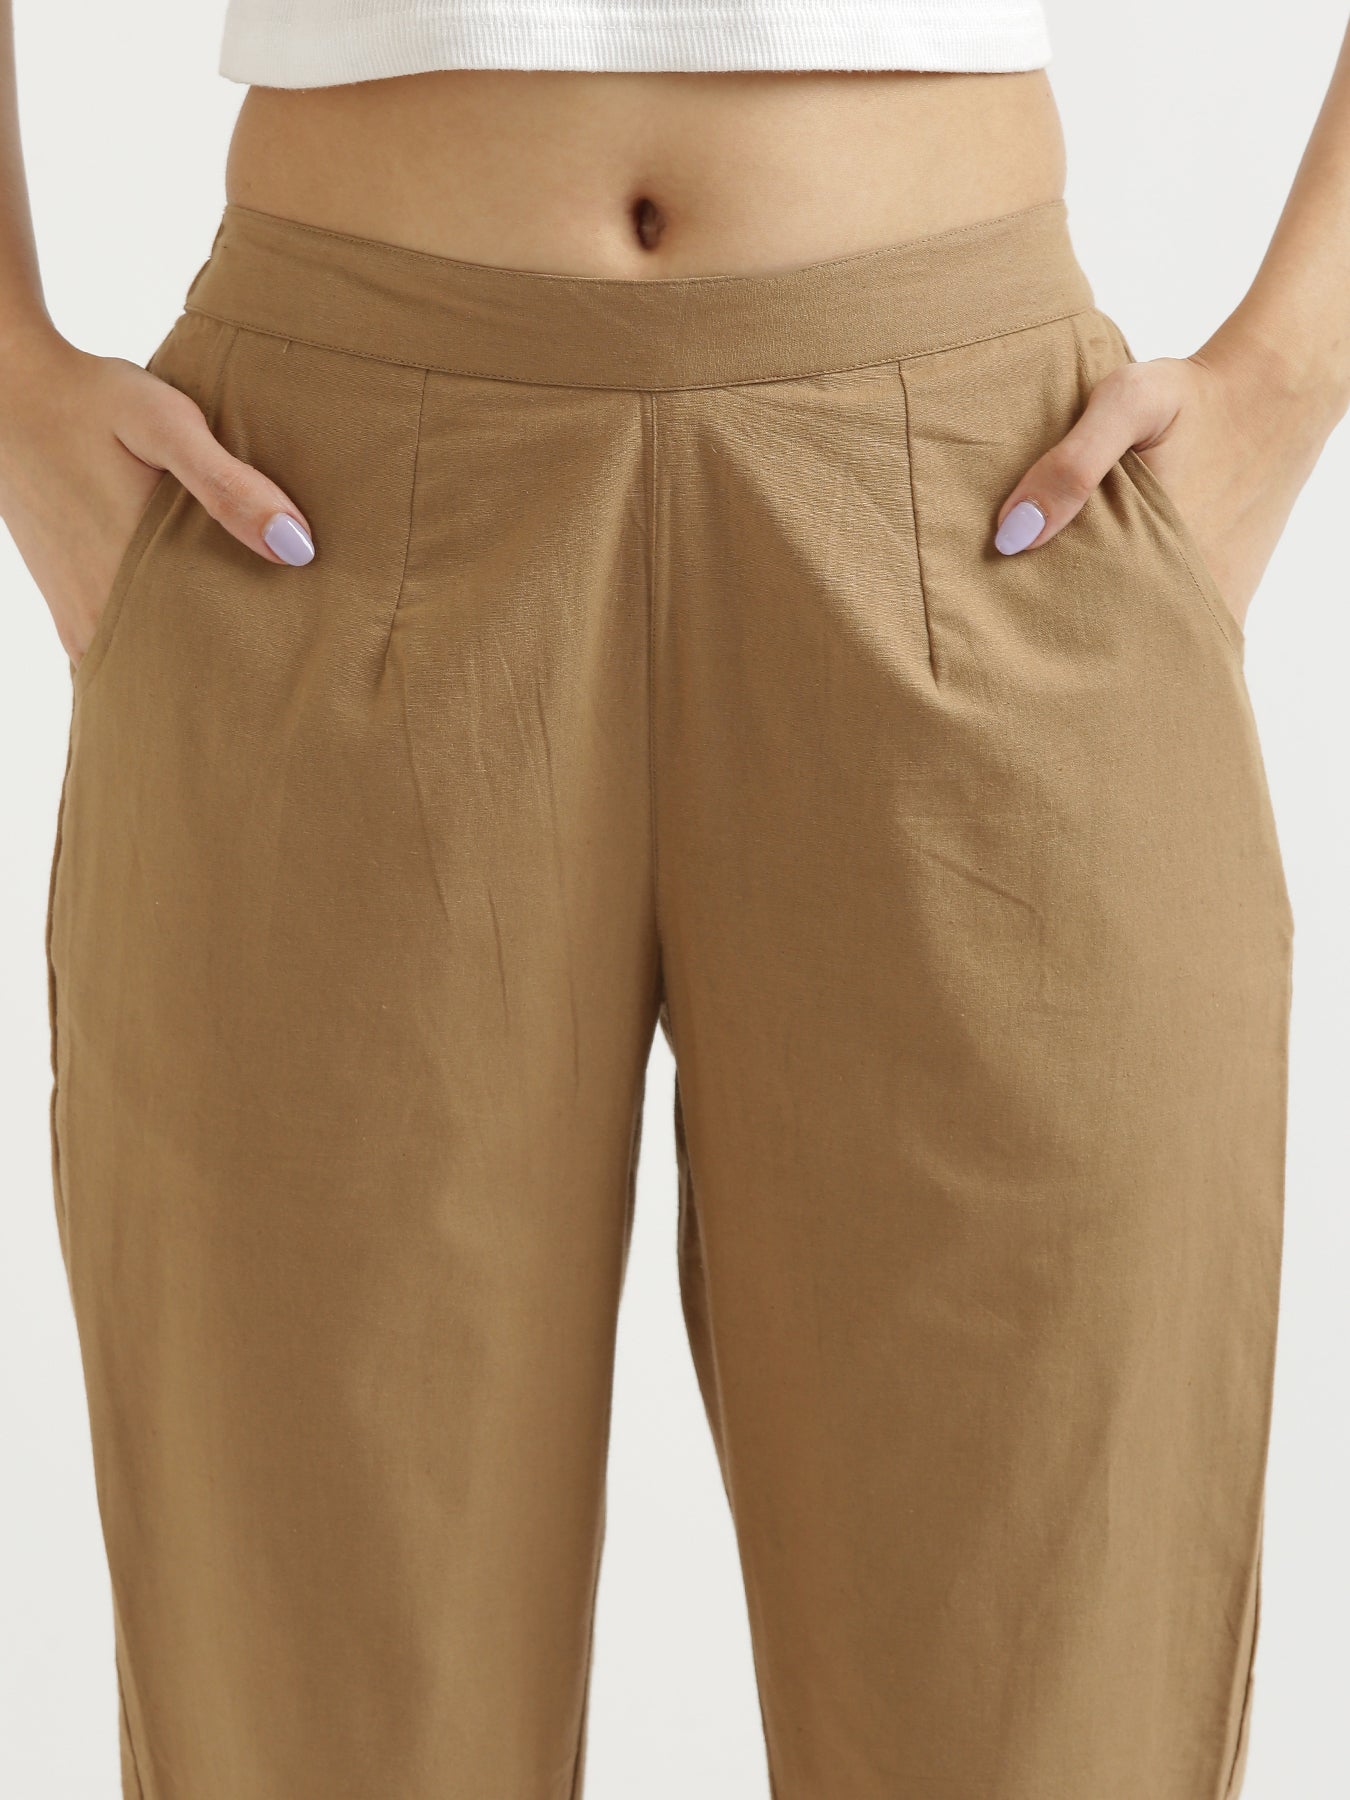 TOP Designer Trouser Designs For Summer Season 2018 || Ladies trouser de...  | Women trousers design, Trouser designs, Trouser design